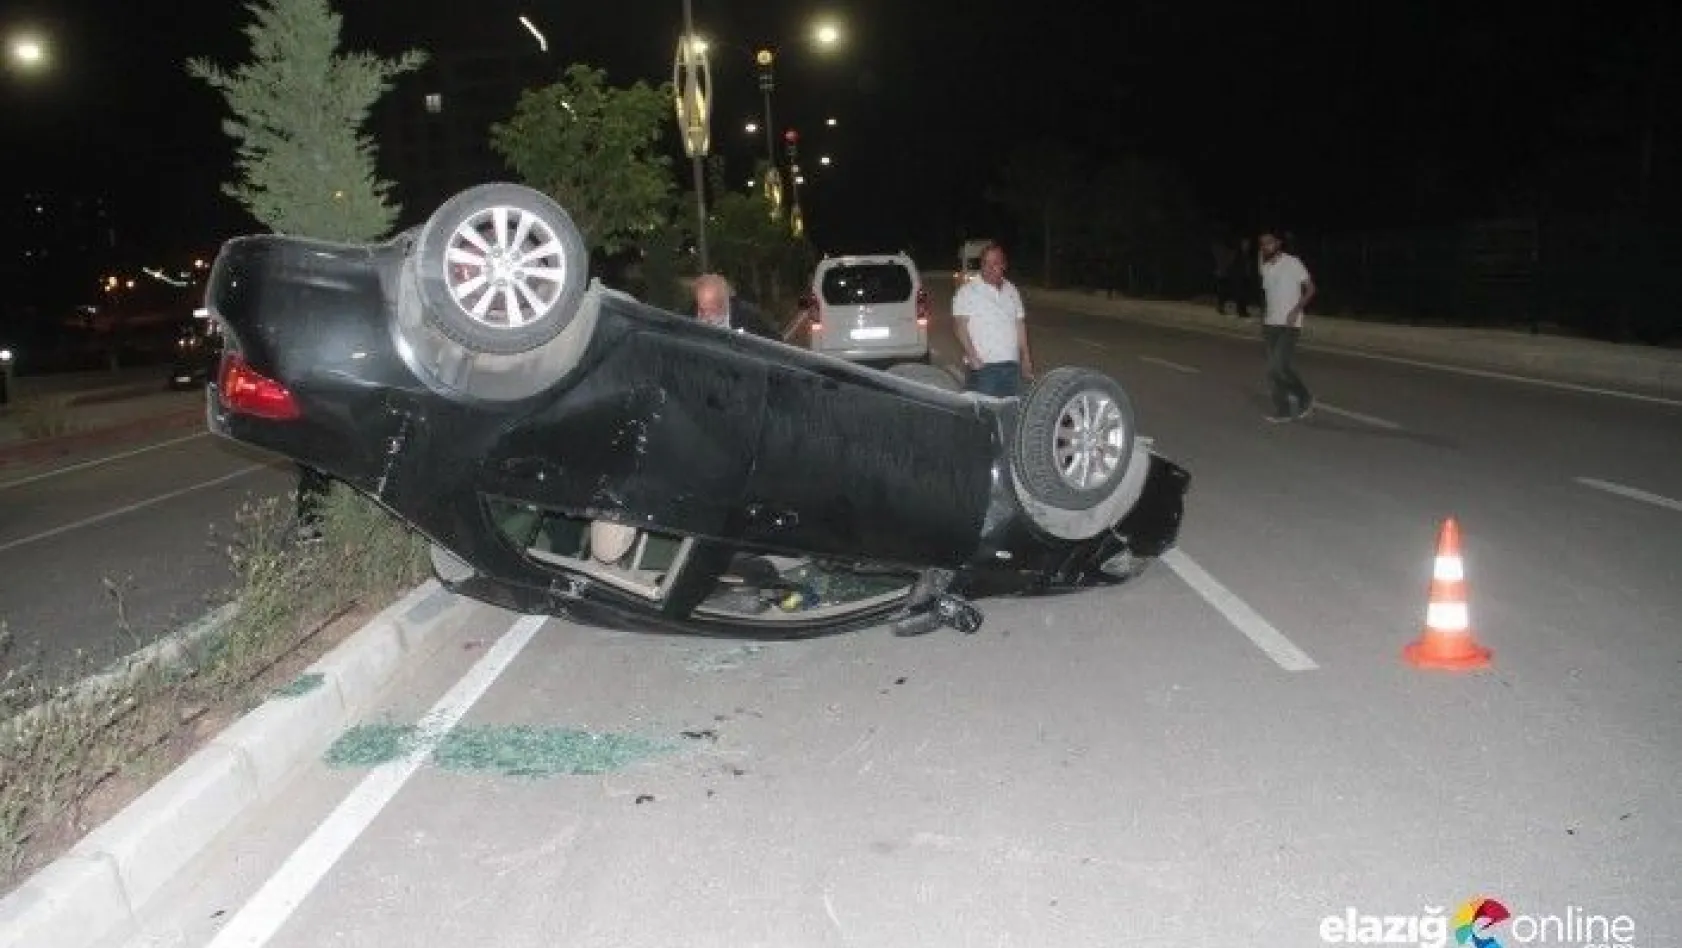 Elazığ'da 2 ayrı trafik kazası!